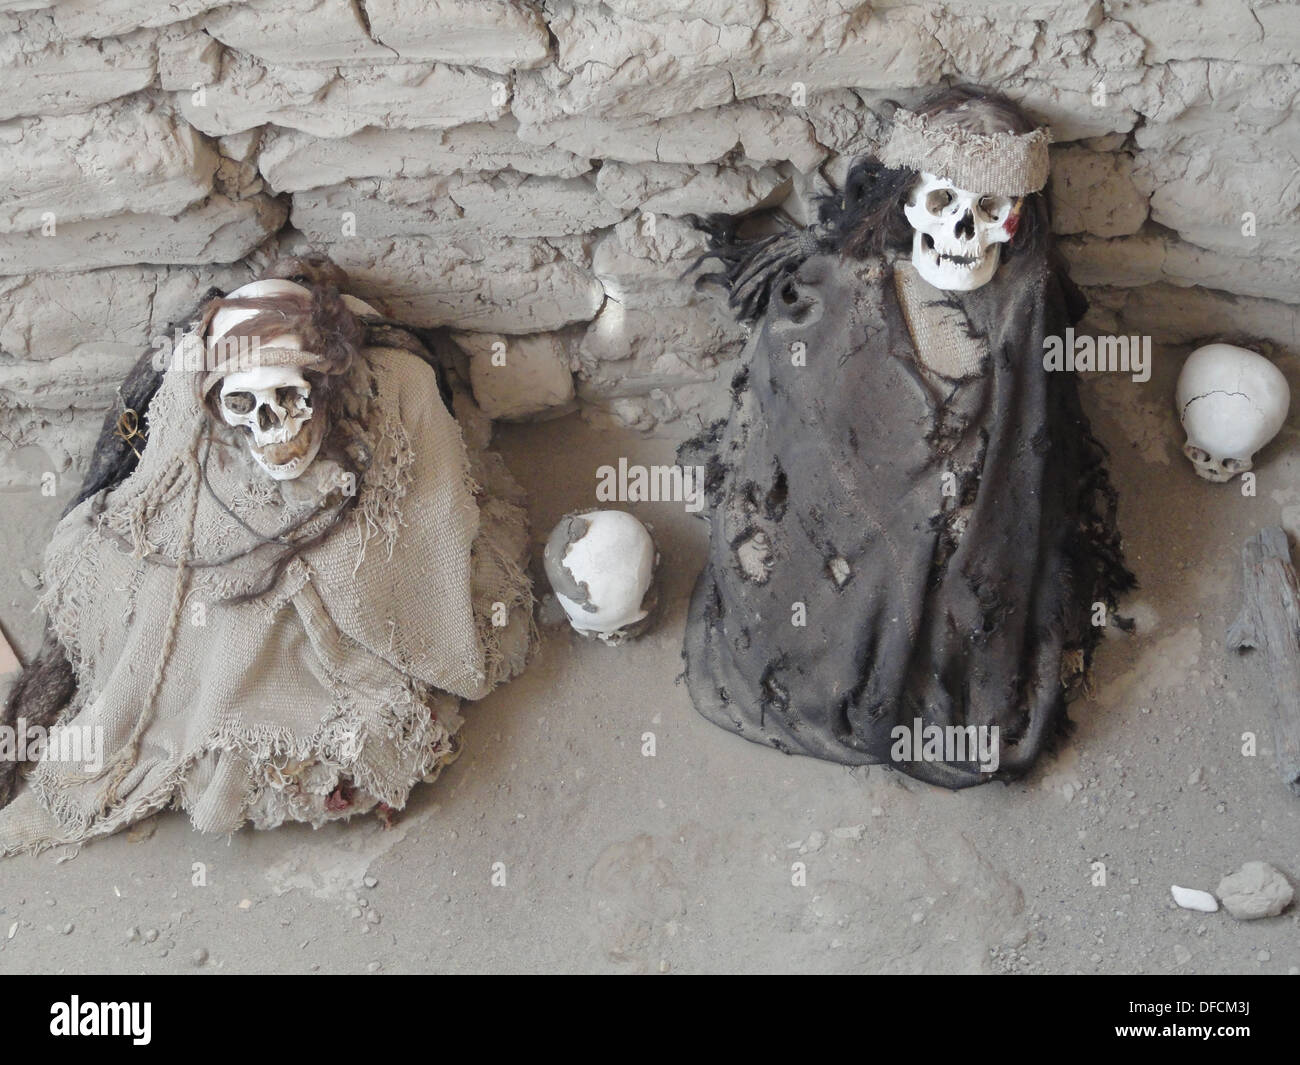 Mummified human remains in the Chauchilla Cemetary near Nazca, Peru Stock Photo